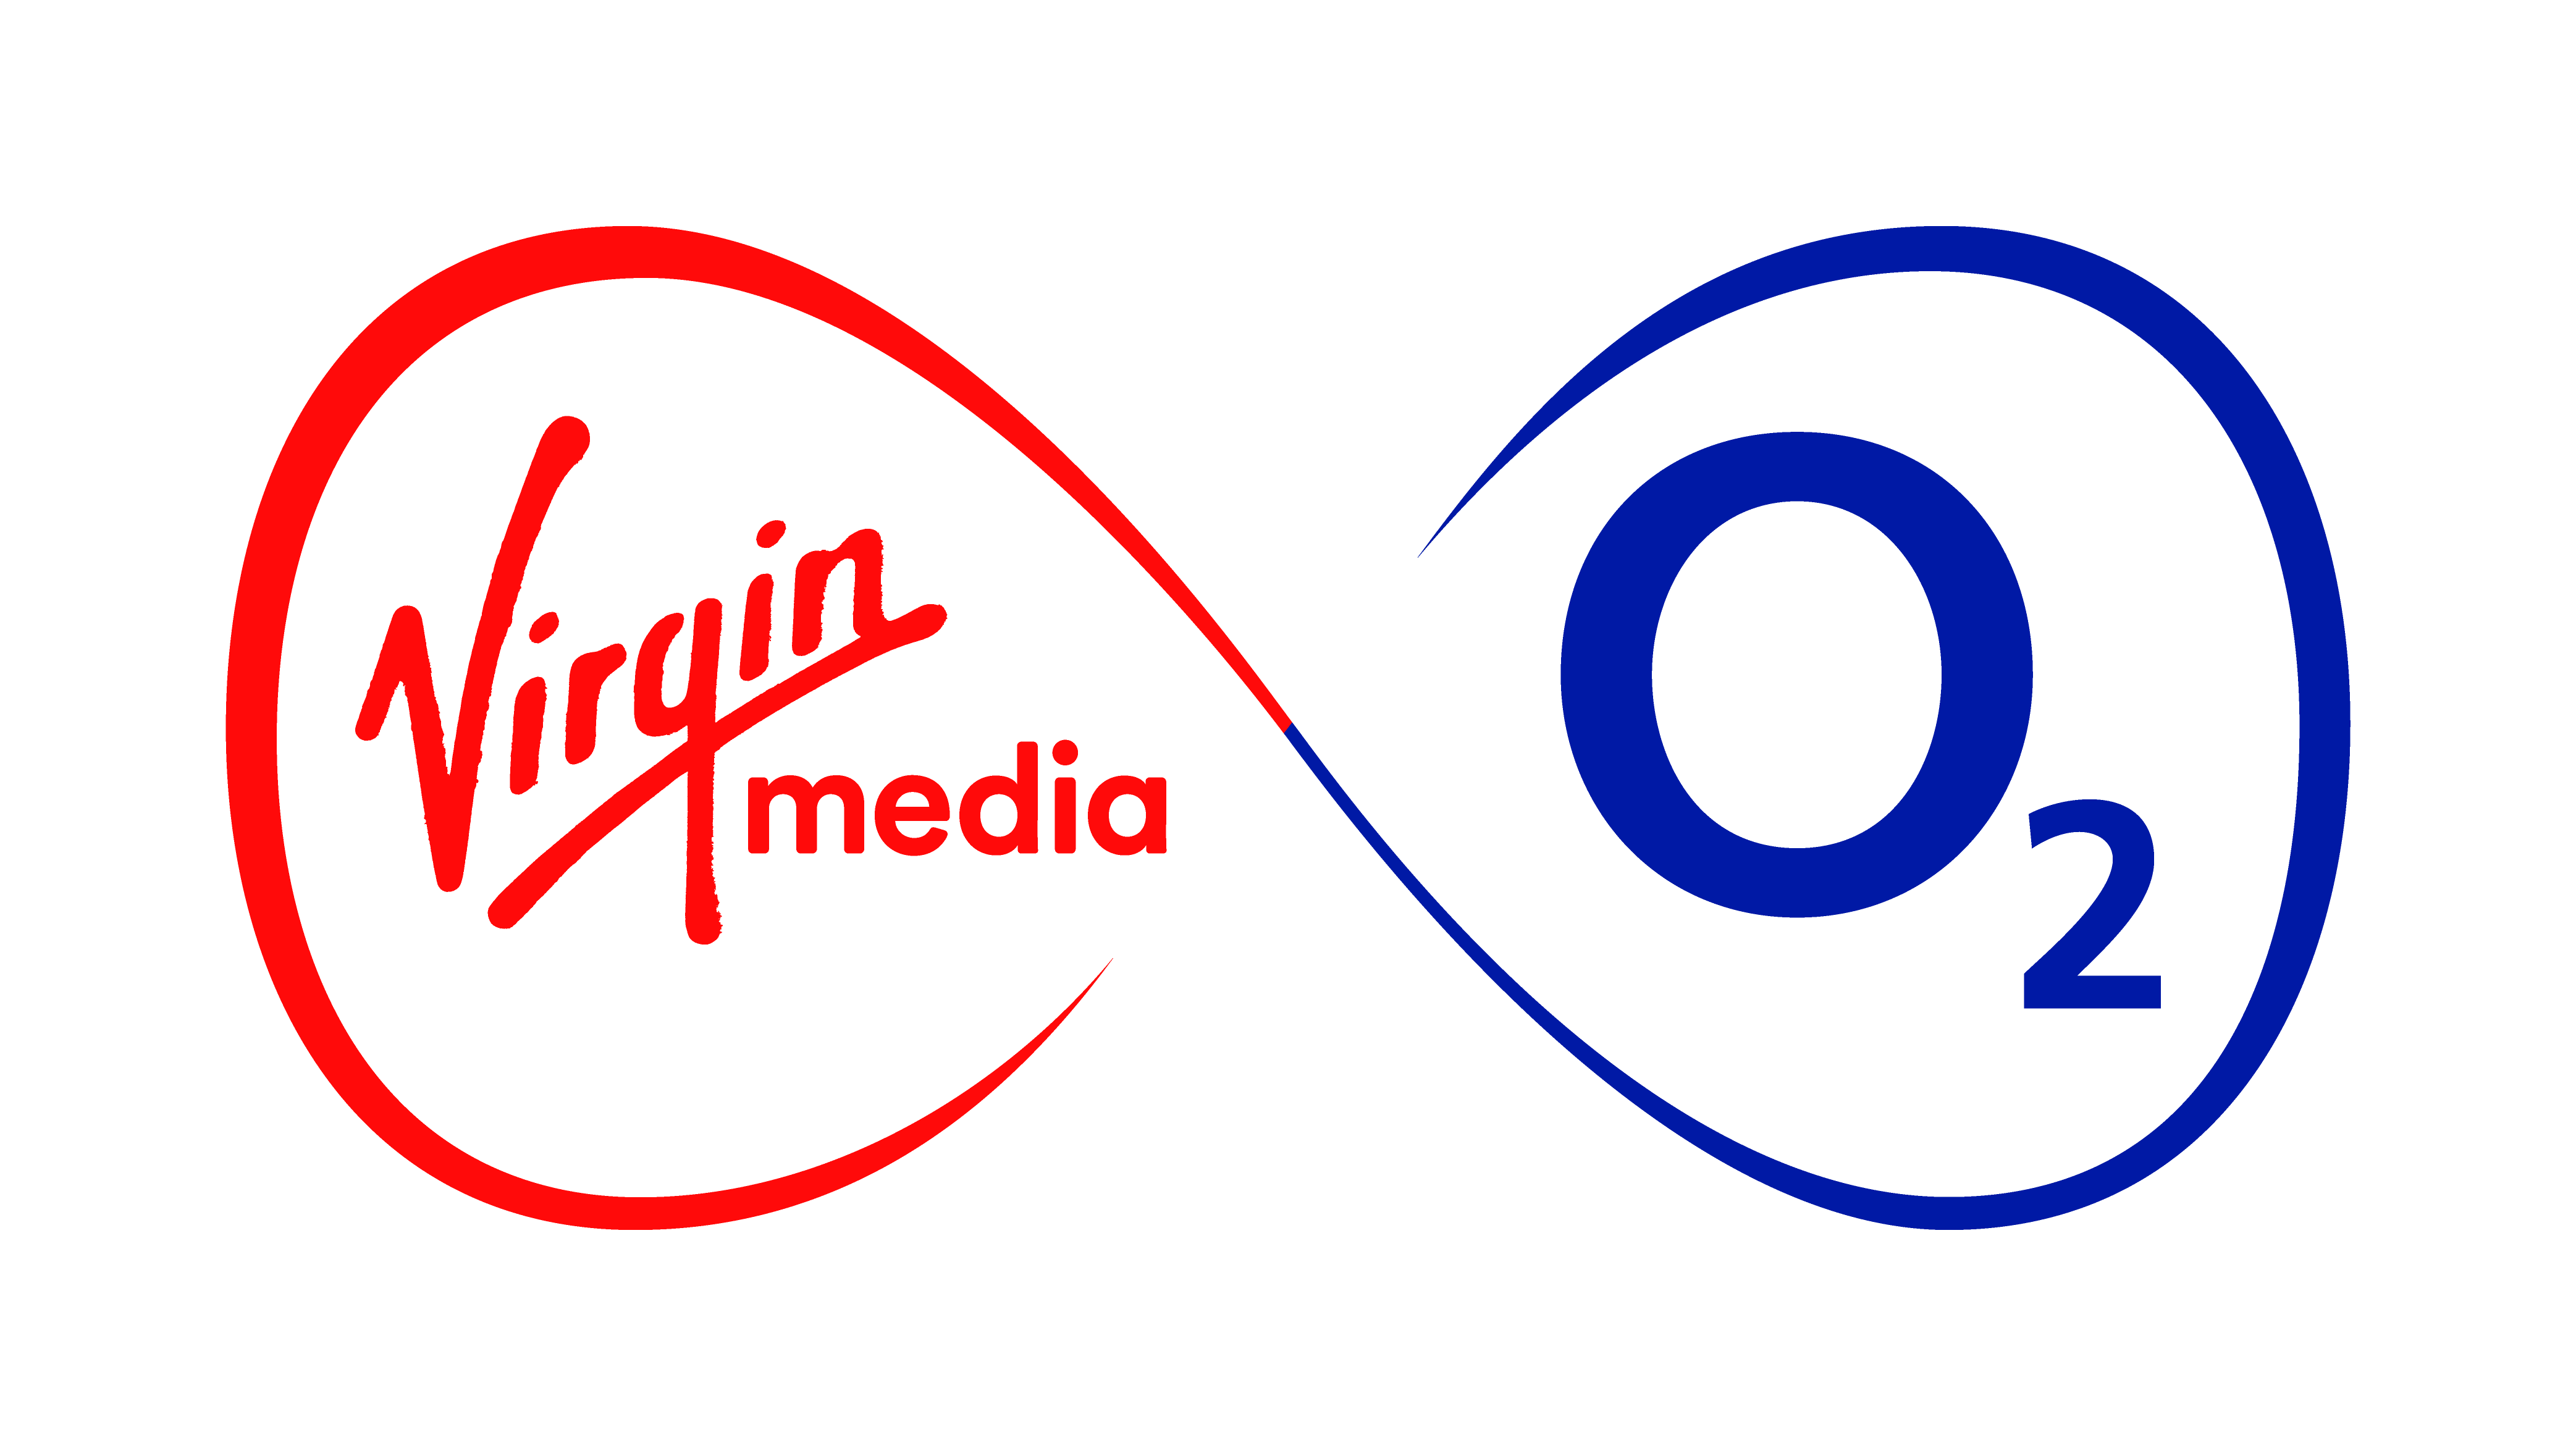 Virgin Media O2